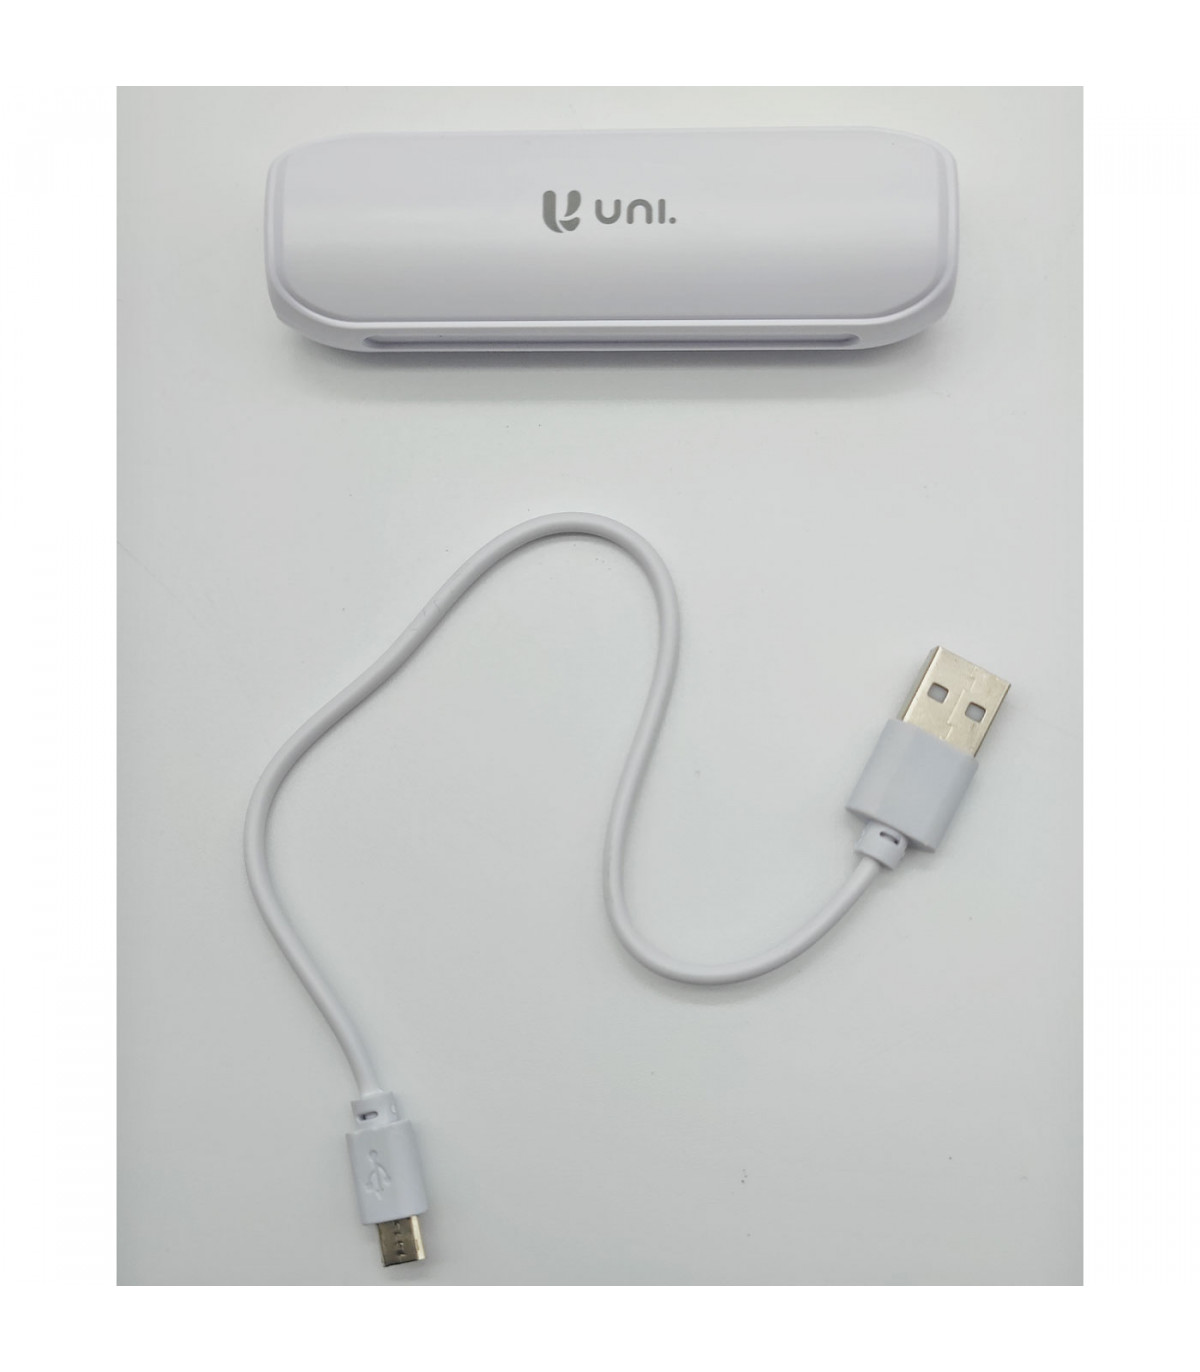 Batería externa blanca 2600 mAh, 1.0A, cable micro-USB, indicador carga  LED, móvil, tablet, mp3, e-book, compatible con Xiaomi